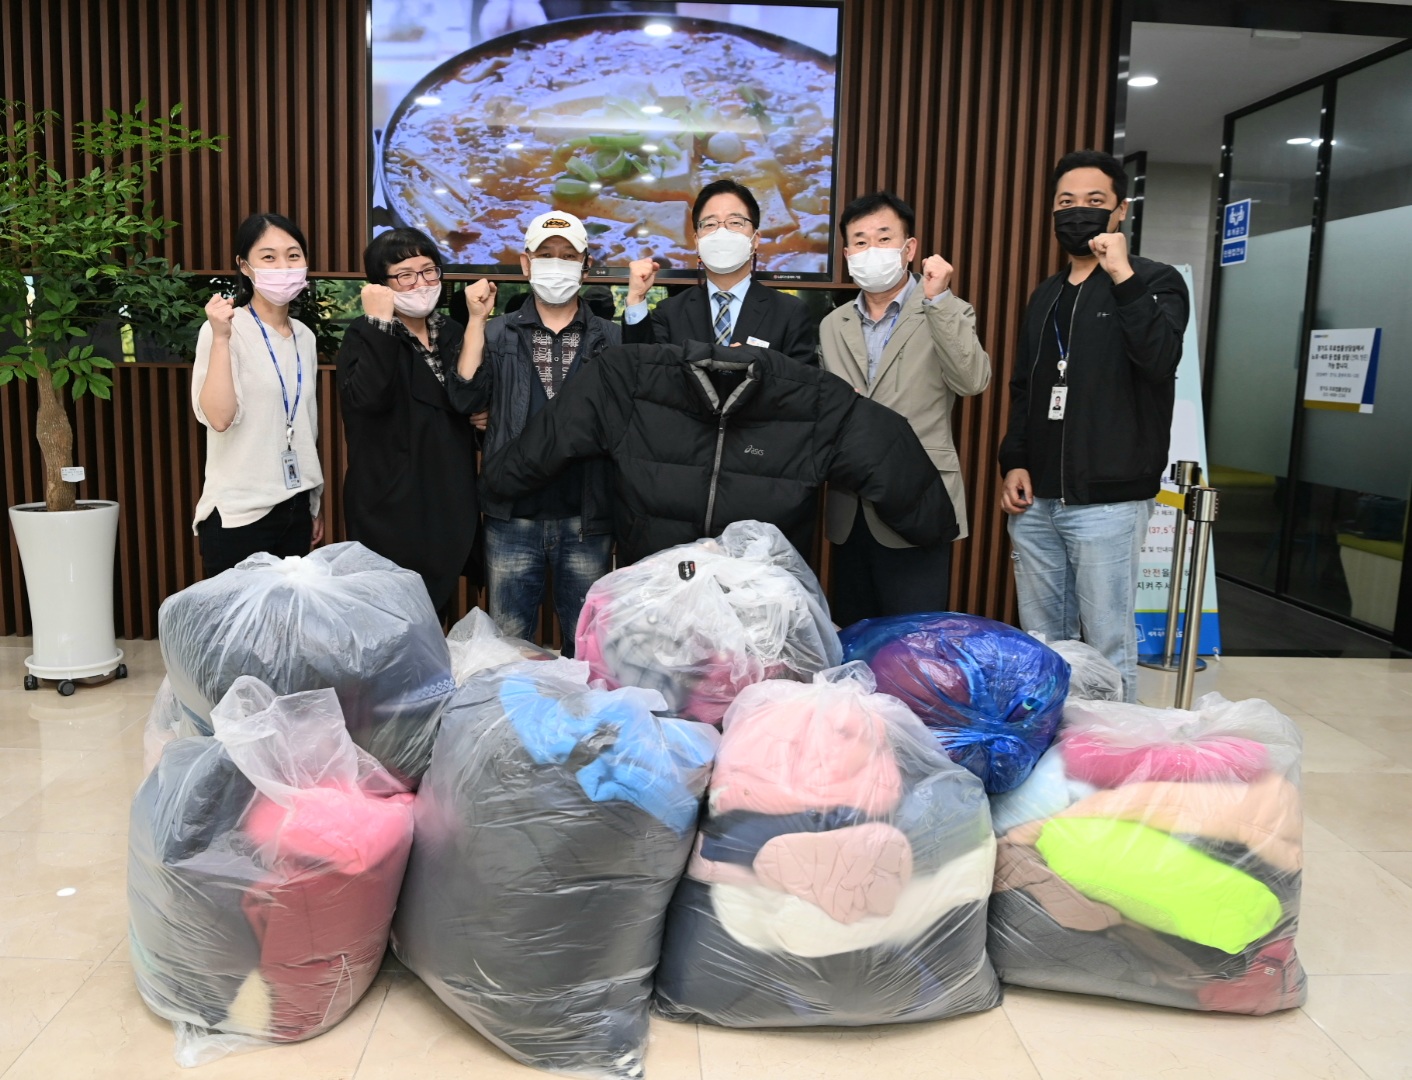 외국인 이웃의 따뜻한 겨울나기 돕기 나선 경기도 공직자들, 외투 280여벌 기부